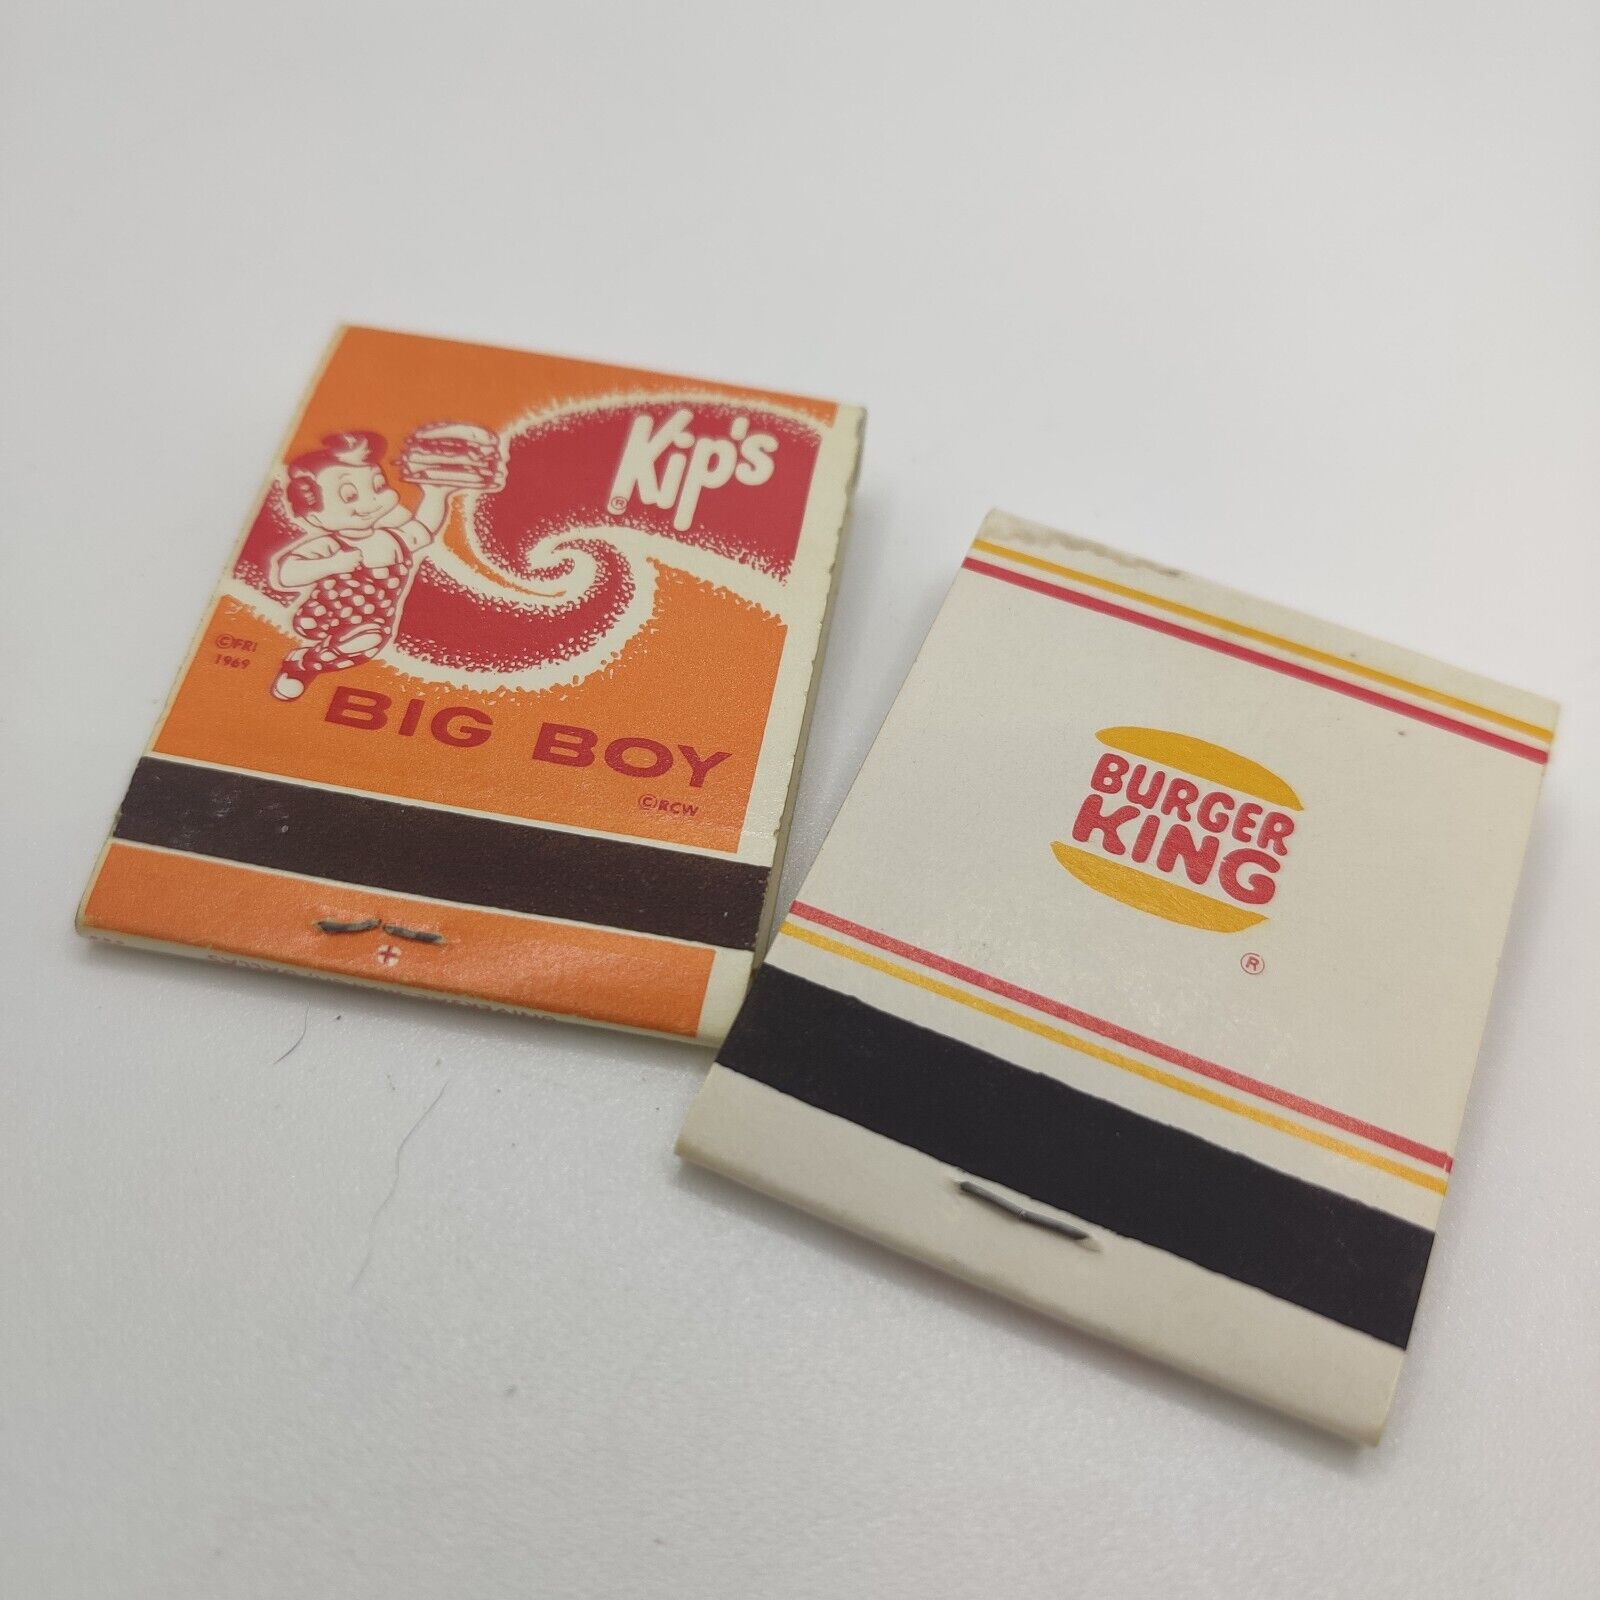 Vintage Burger King & Kip\'s Big Boy Matchbook Advertising